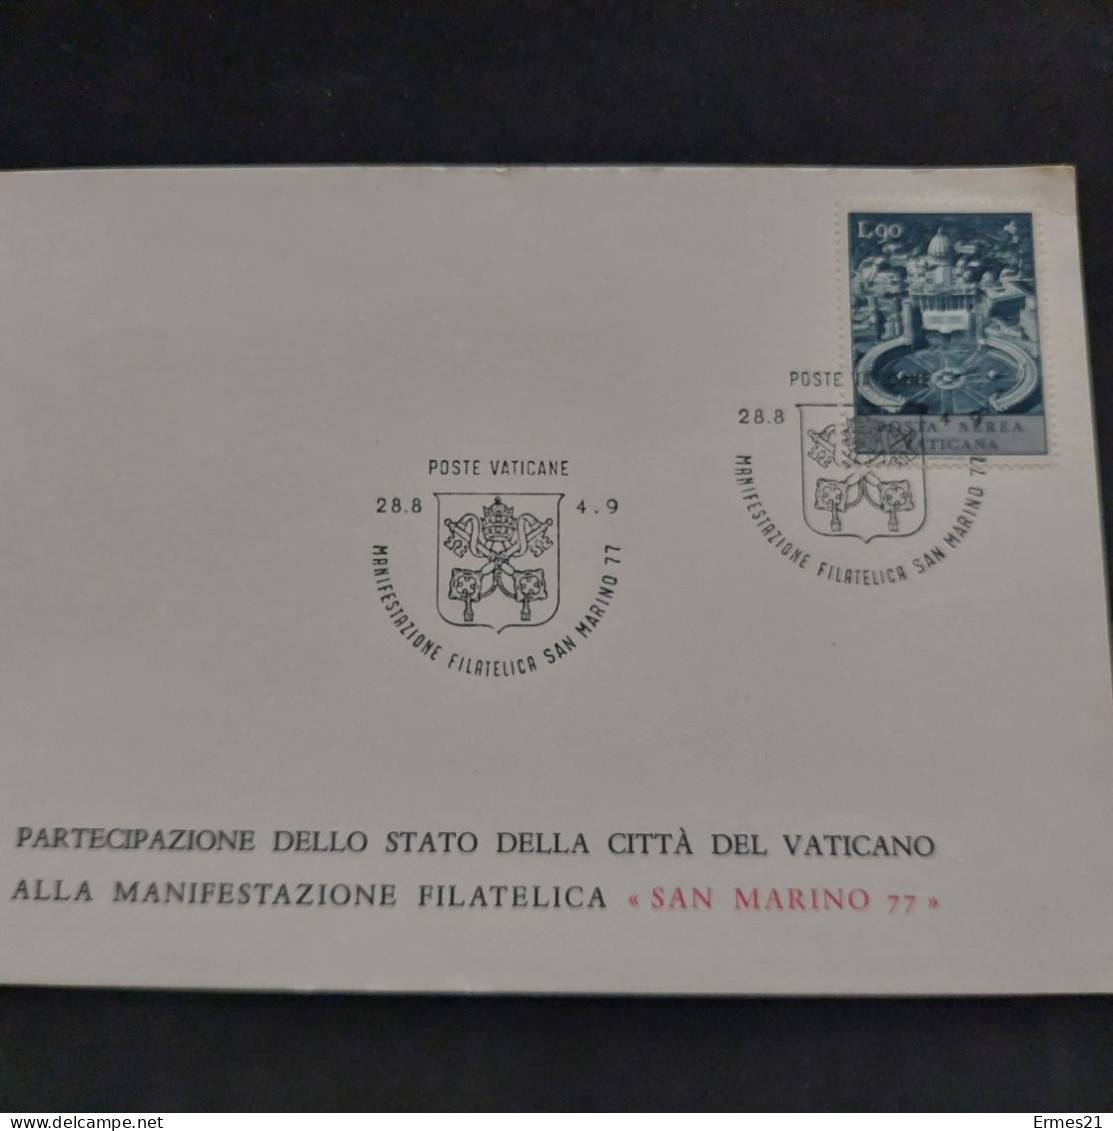 Governatorato  Poste Vaticane 1977. Partecipazione Città Del Vaticano Manifestazione Filatelica "San Marino 77". Nuove. - Plaatfouten & Curiosa